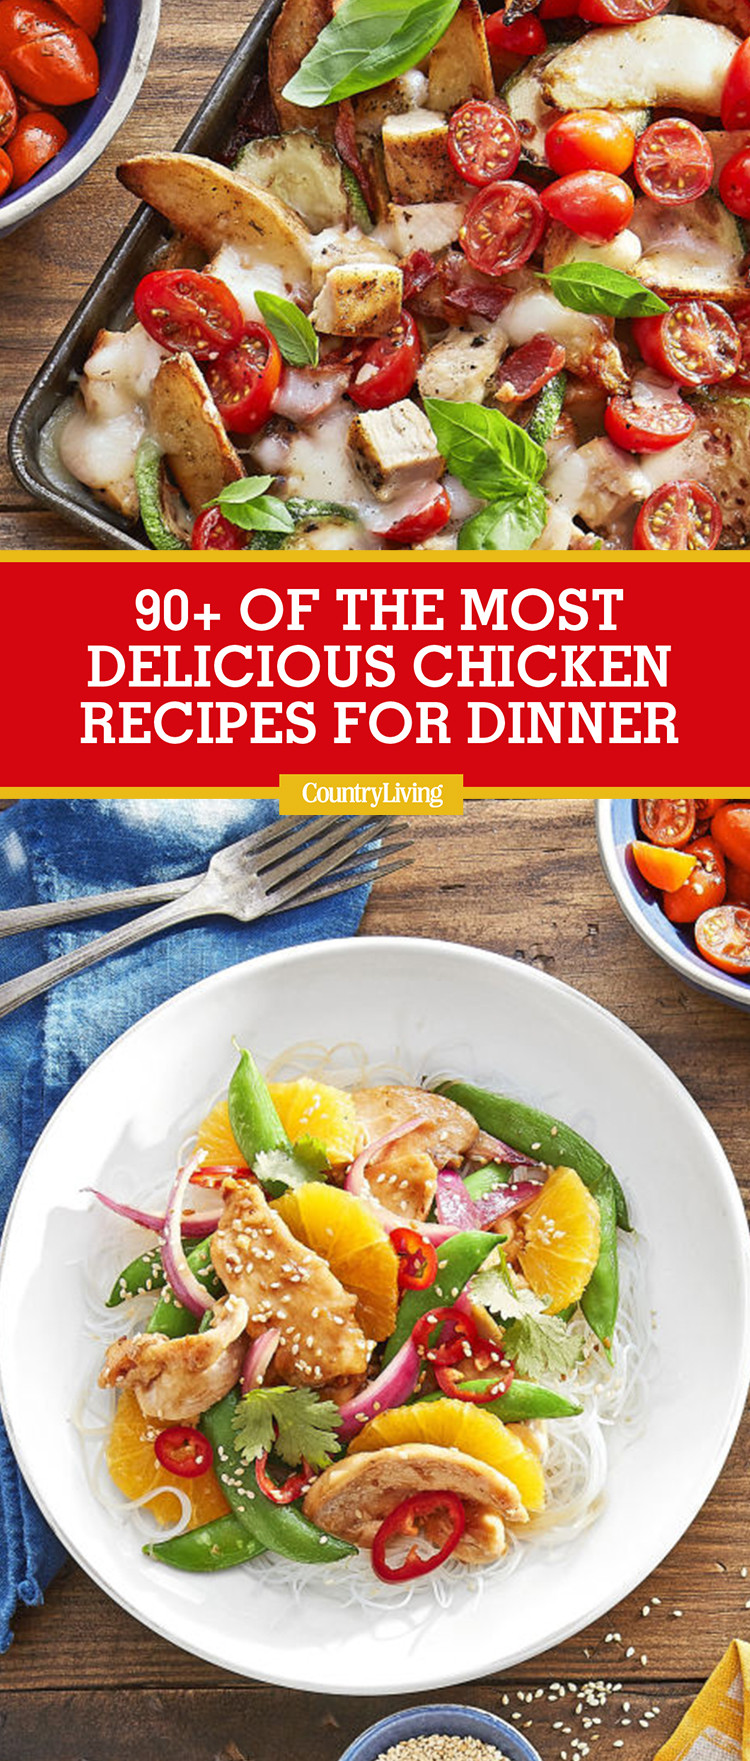 Dinner Ideas Chicken
 93 Best Chicken Dinner Recipes 2017 Top Easy Chicken